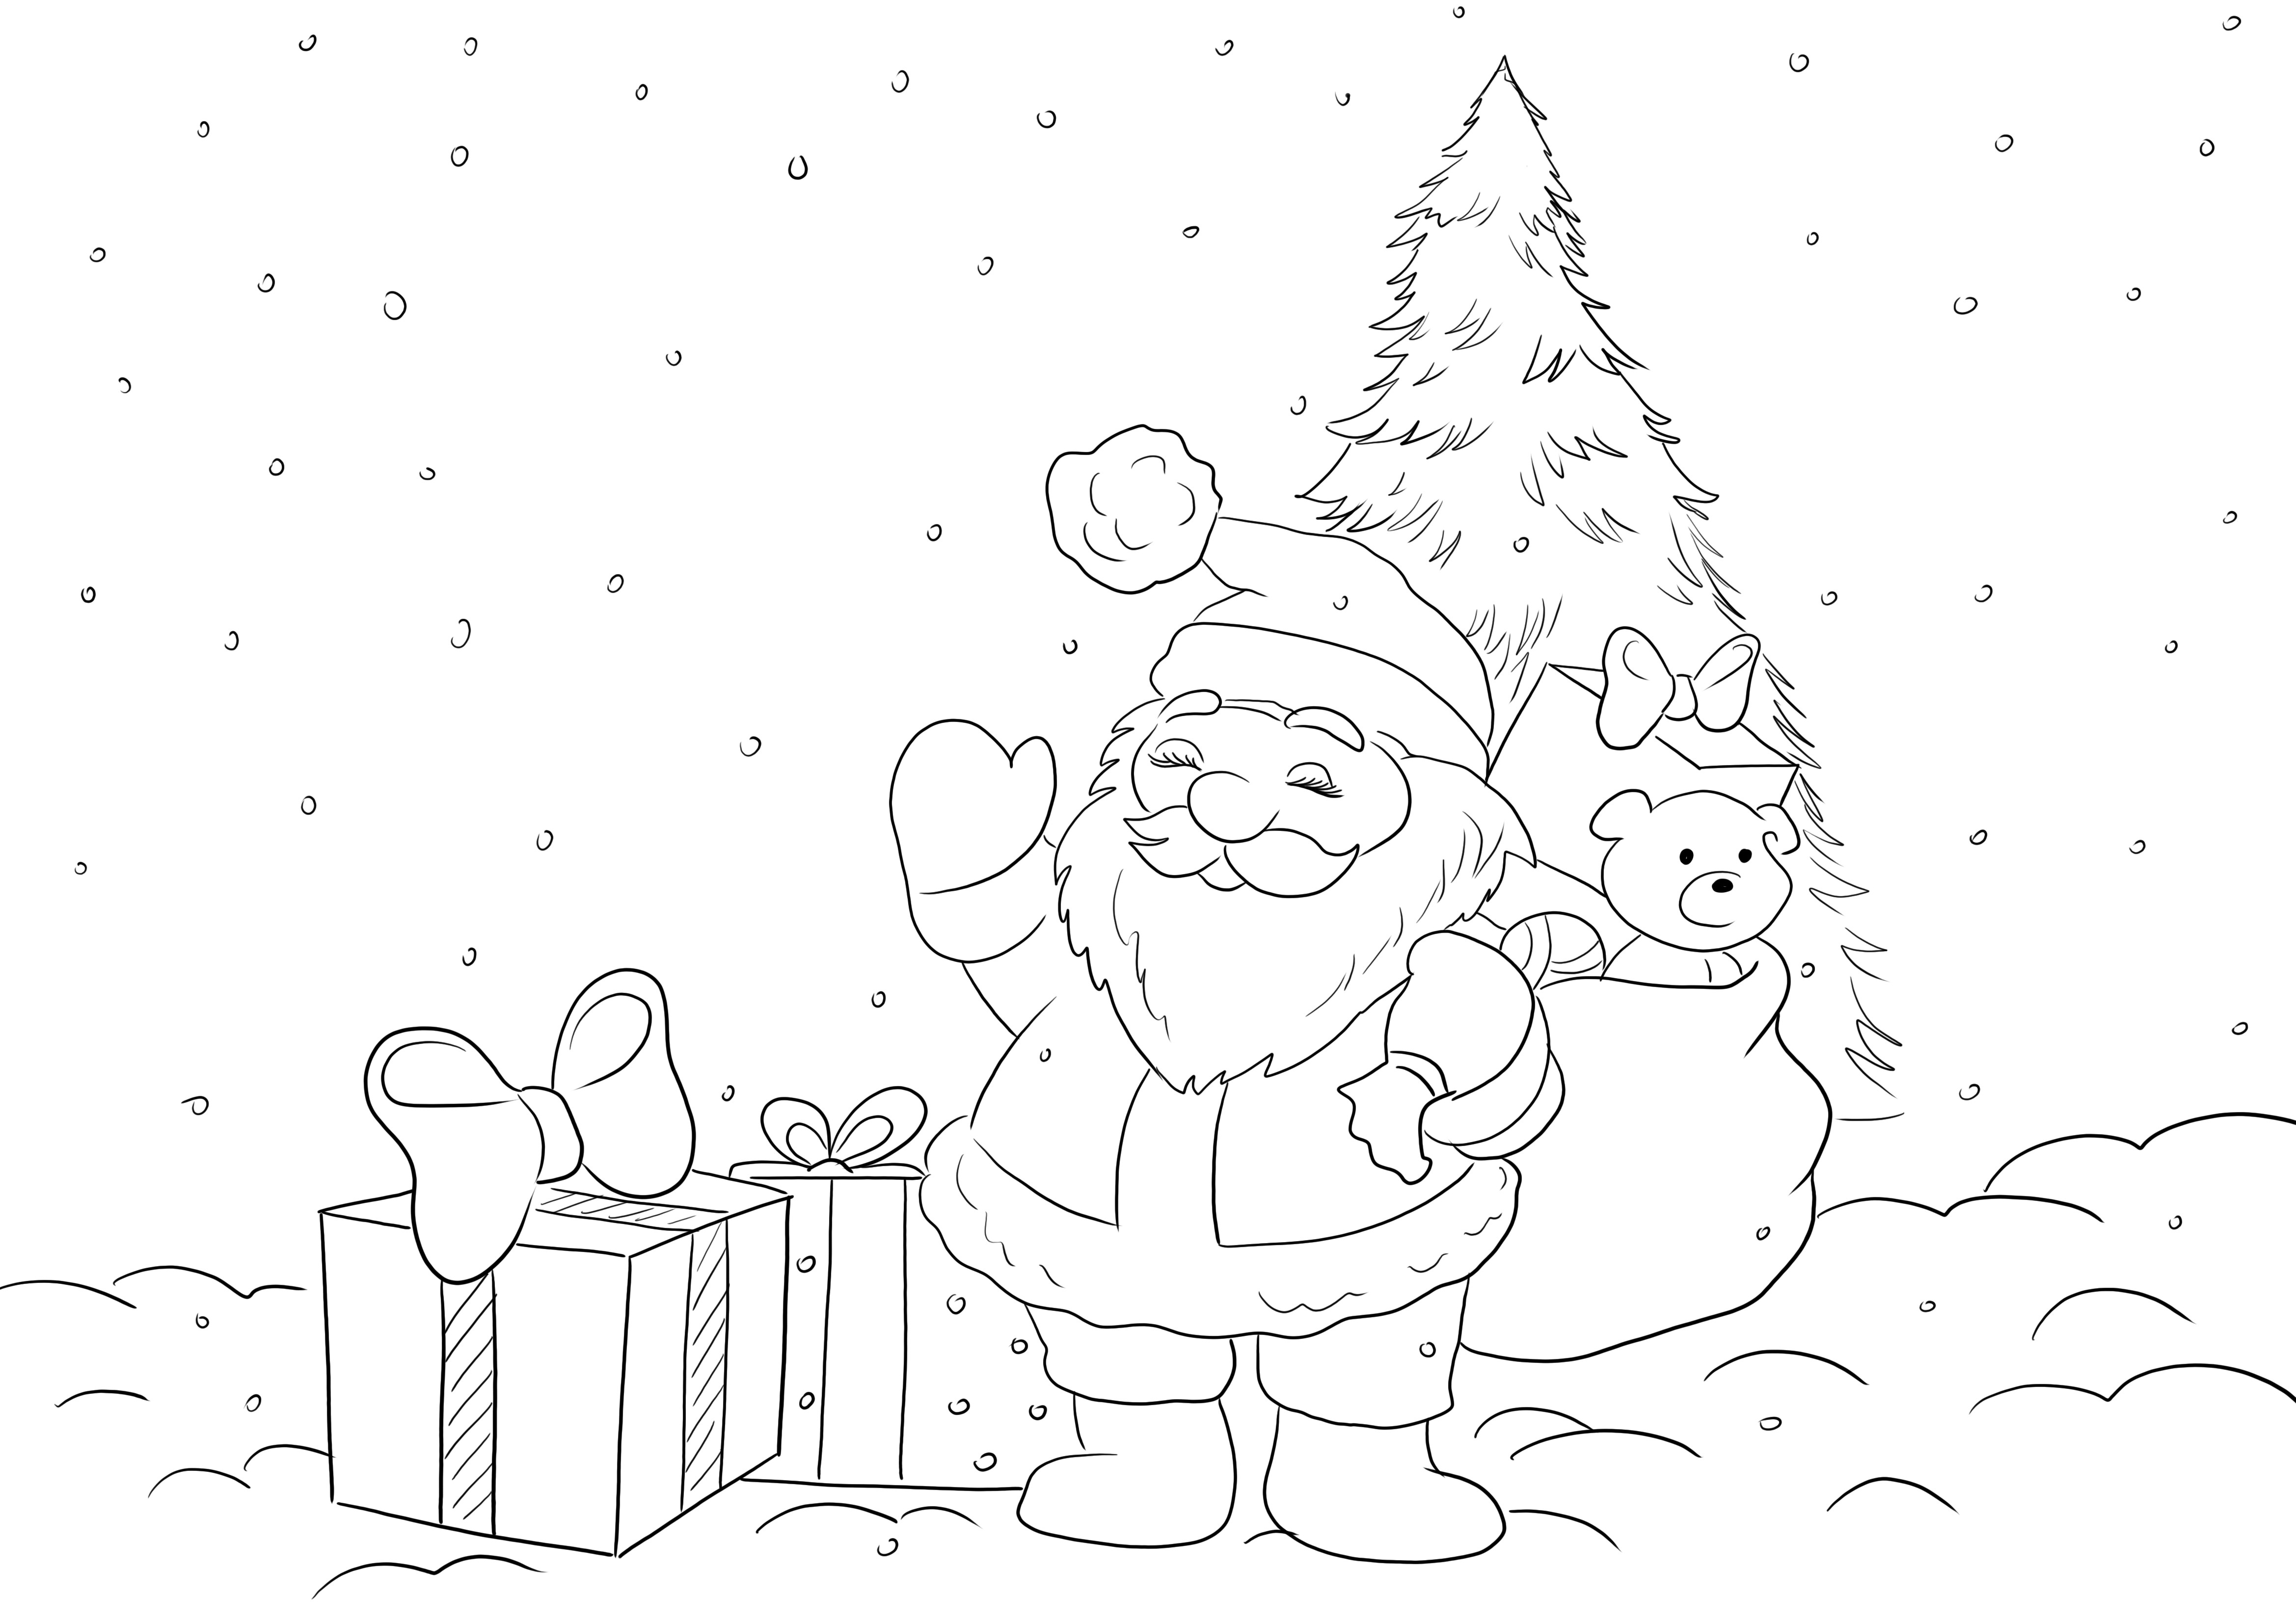 Darmowy obraz do kolorowania przedstawiający Świętego Mikołaja z prezentami czekający na wszystkie dzieci do kolorowania z zabawą